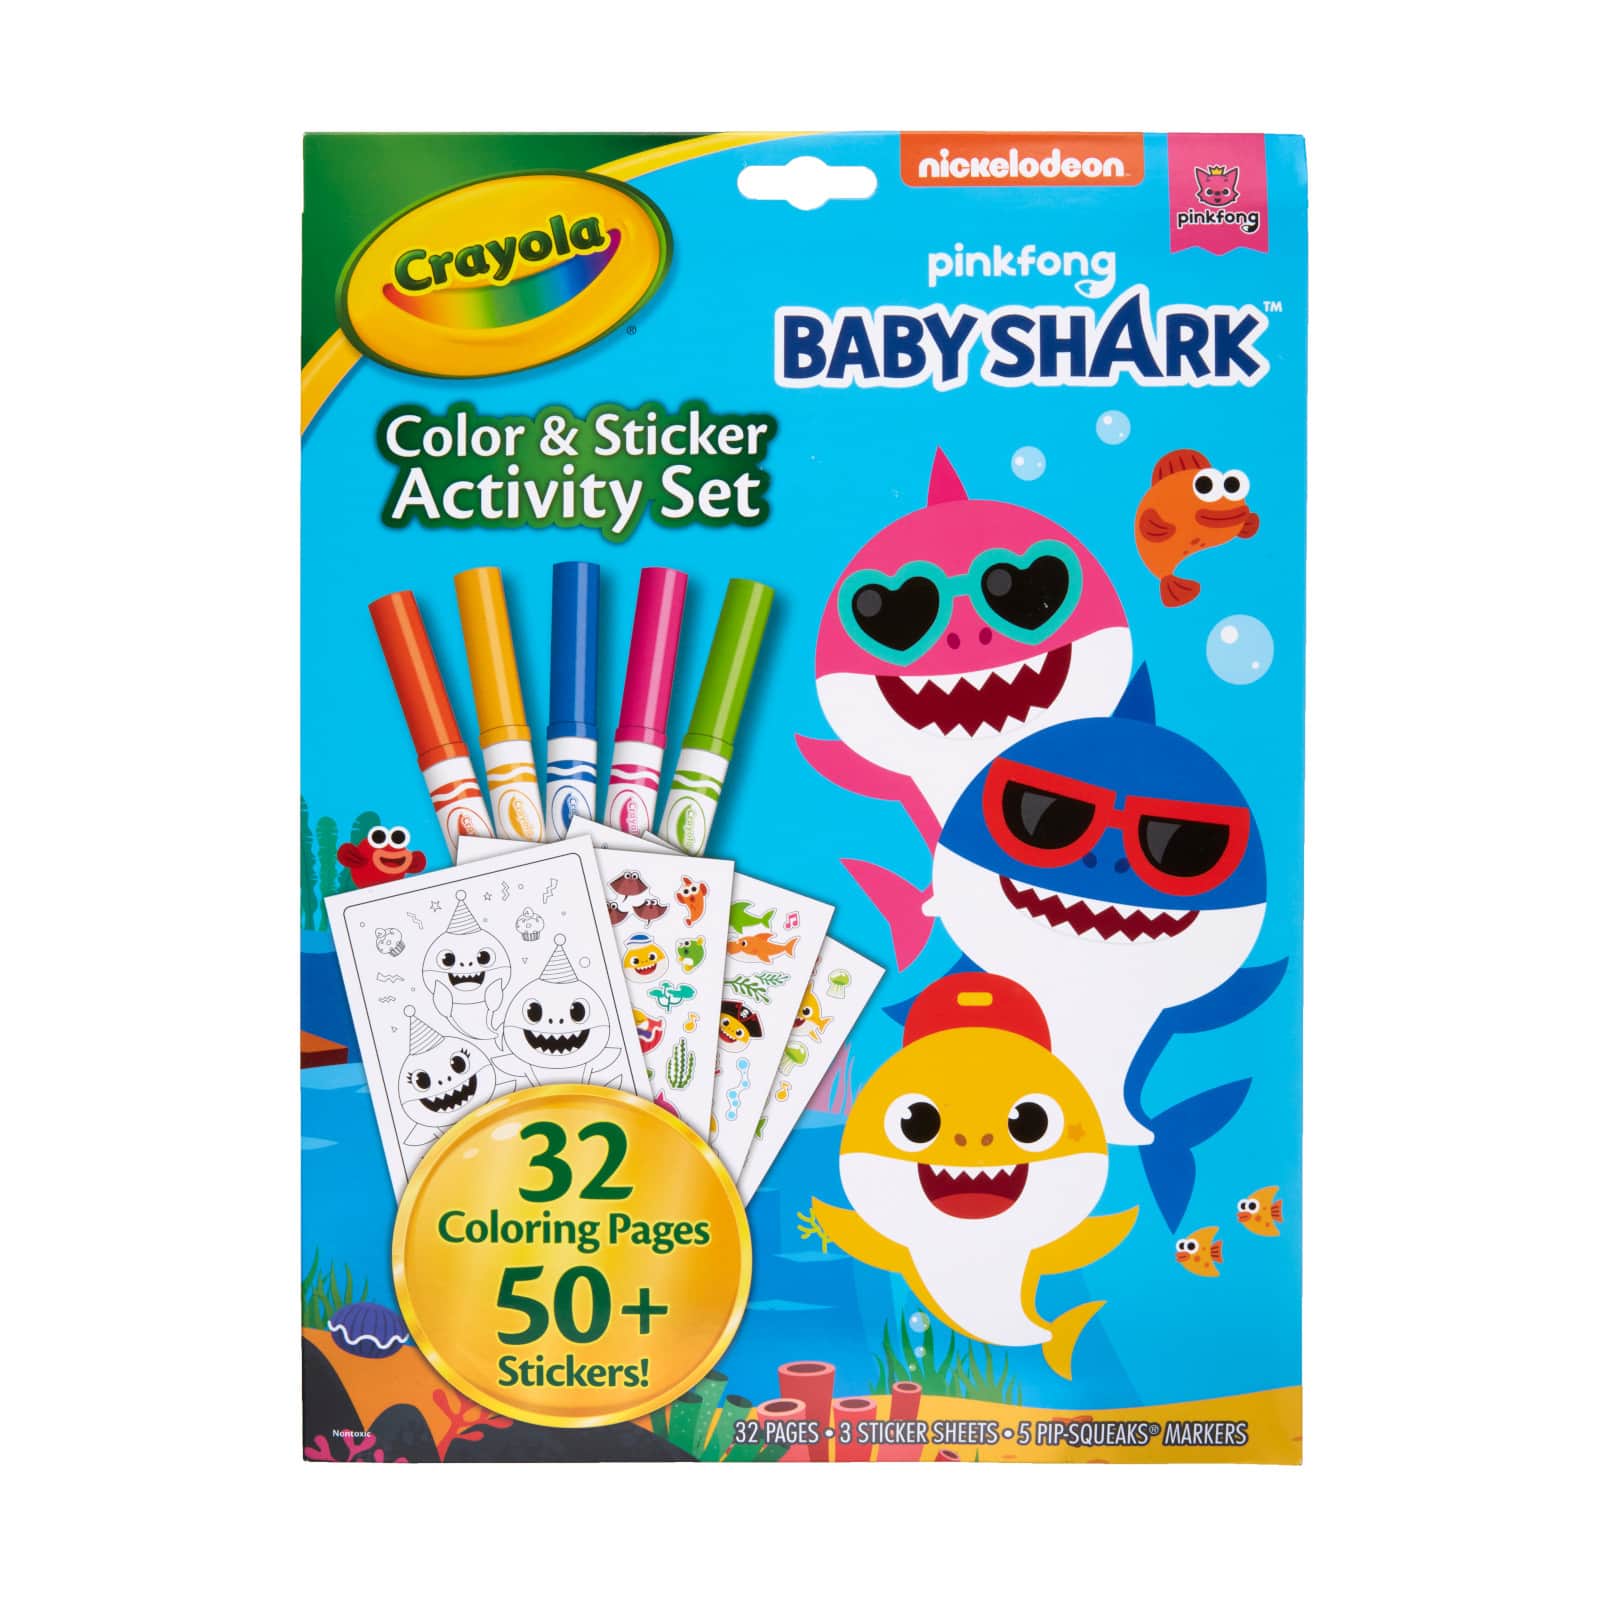 Crayola Baby Shark Art Set, 90 Pieces